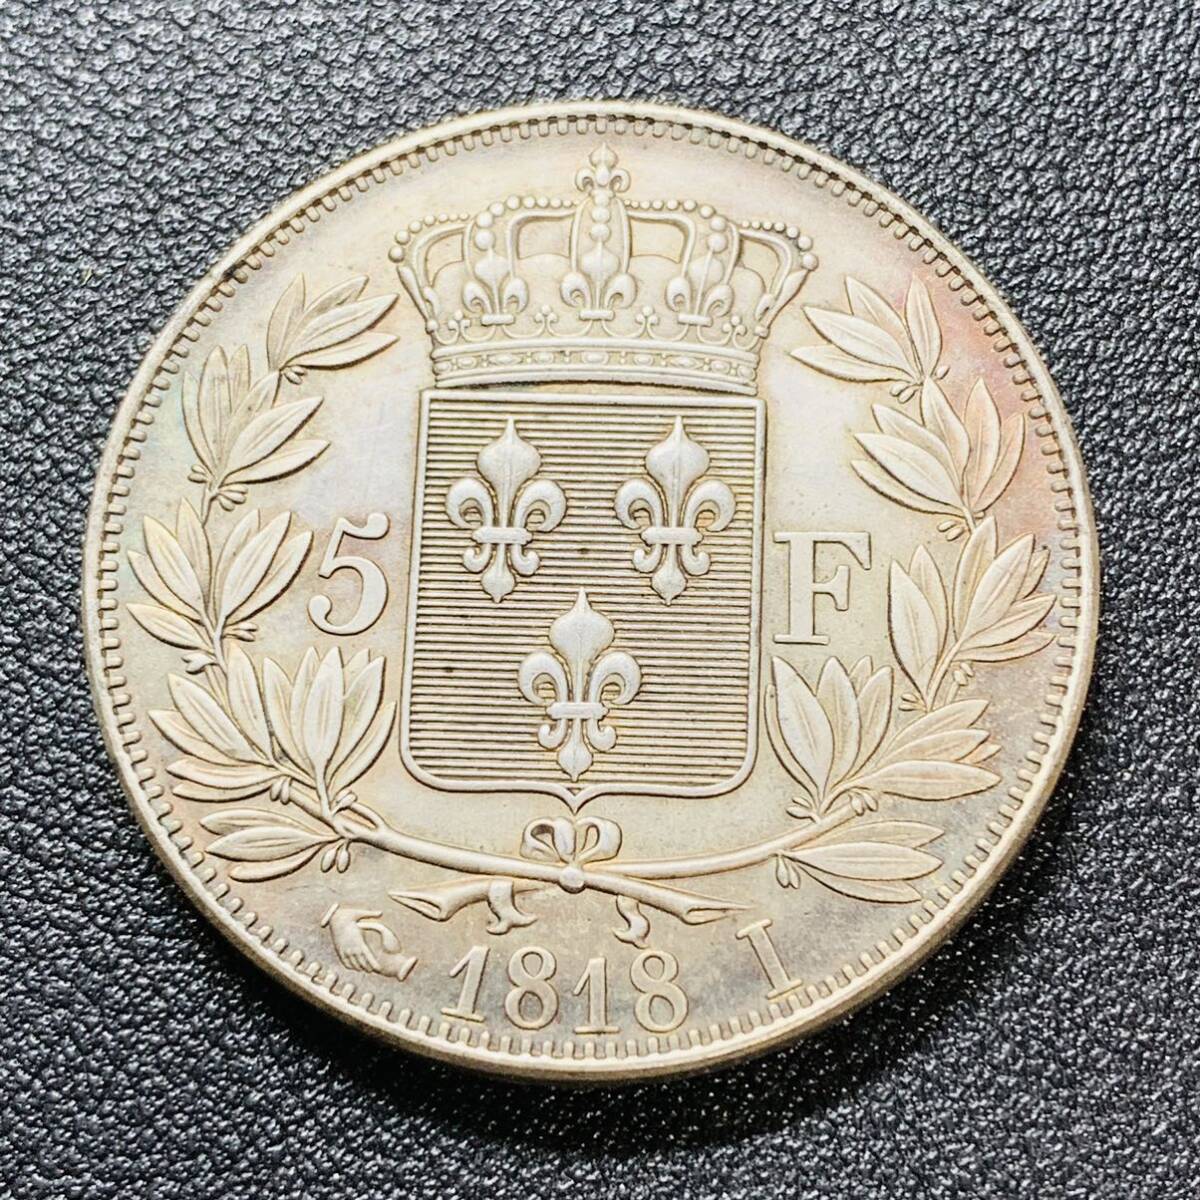 銀貨 古銭 フランス 1818年 ルイ18世 ブルボン朝 皇室旗 クラウン 5フラン 大型 コイン 硬貨 貿易銀の画像1